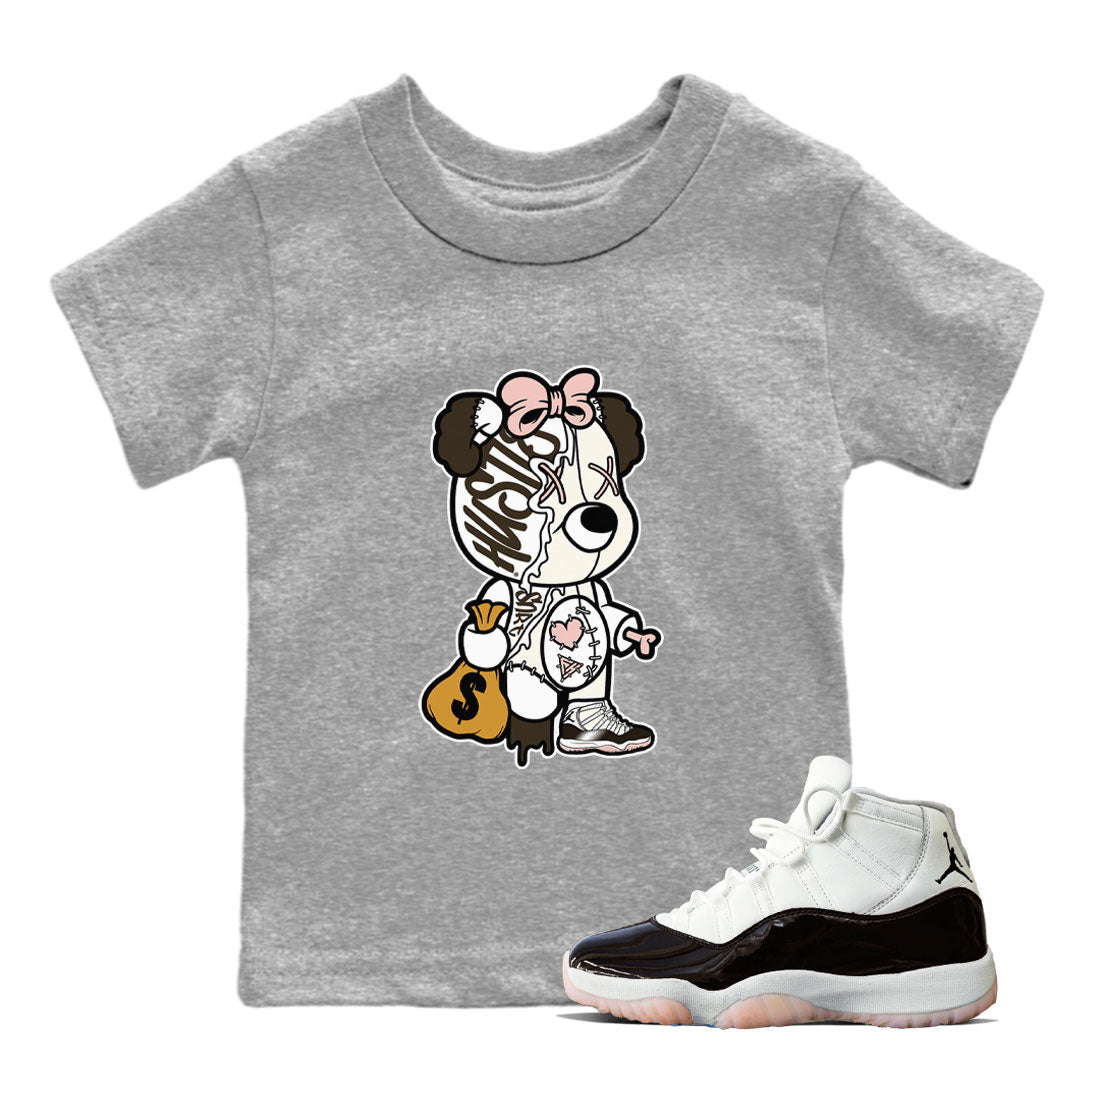 Jordan 11 WMNS Neapolitan sneaker shirt to match jordans Stitched Hustle Bear sneaker tees Air Jordan 11 Neapolitan SNRT Sneaker Tees Youth Kid's Baby Shirt Heather Grey 1 T-Shirt